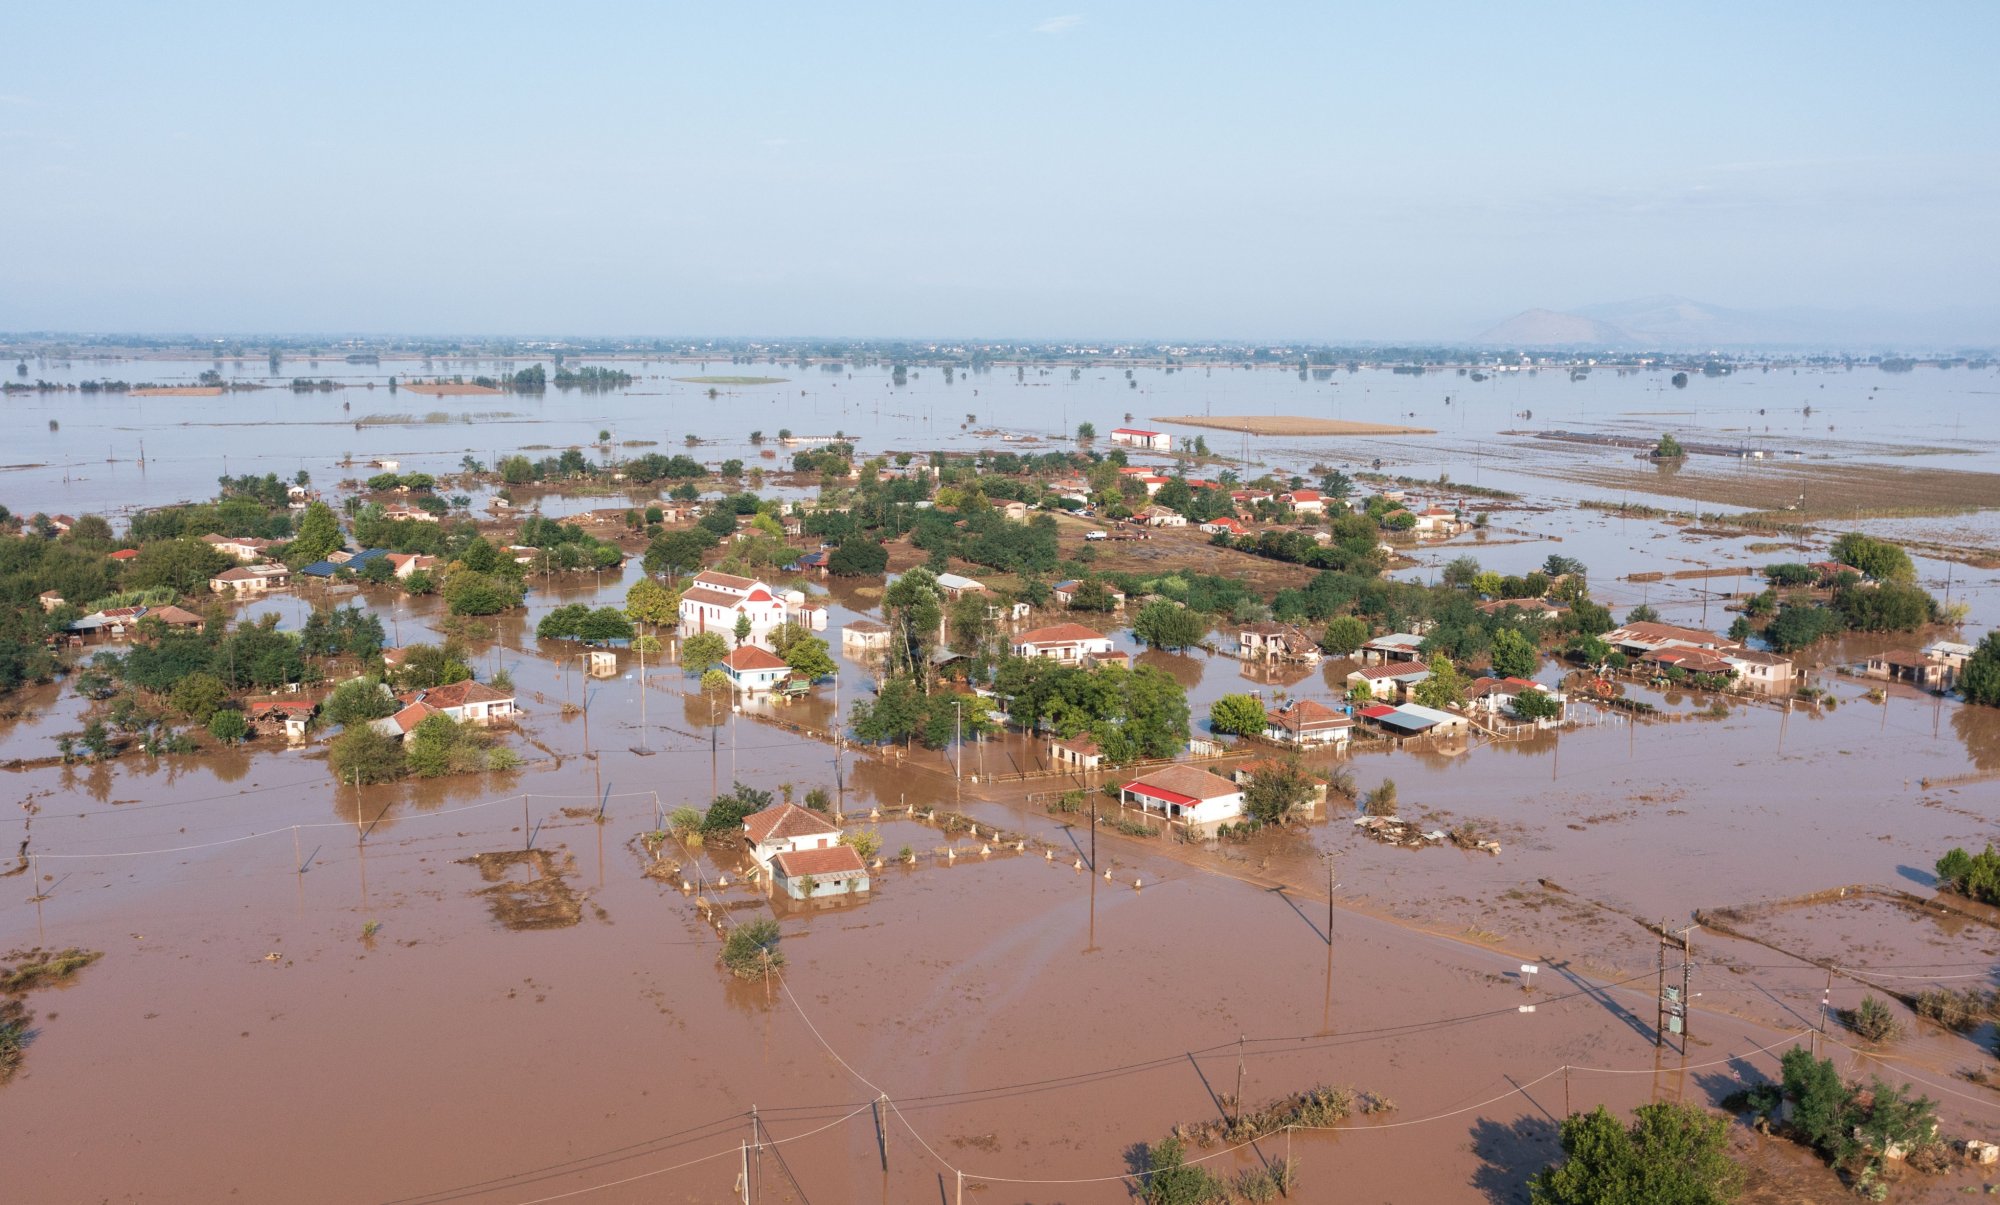 Θεσσαλικός κάμπος: Τα σημεία συγκέντρωσης στην Αττική ειδών πρώτης ανάγκης για τους πλημμυροπαθείς